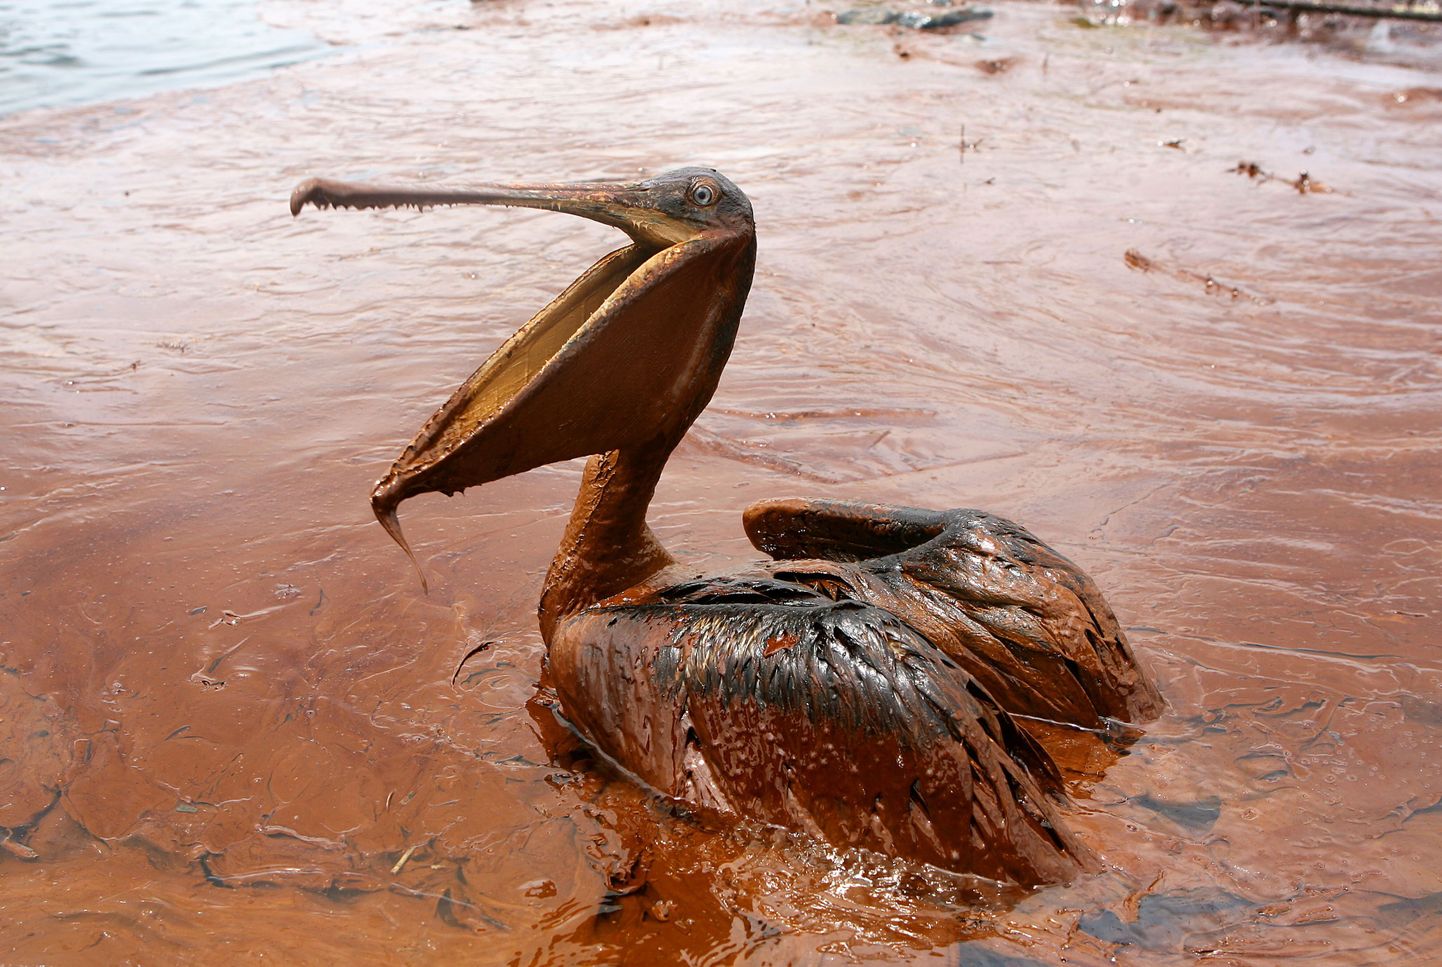 В субботу этот бурый пеликан, являющийся символом штата Луизиана, безуспешно пытался выбраться из слоя нефти в загрязненных водах Мексиканского залива.